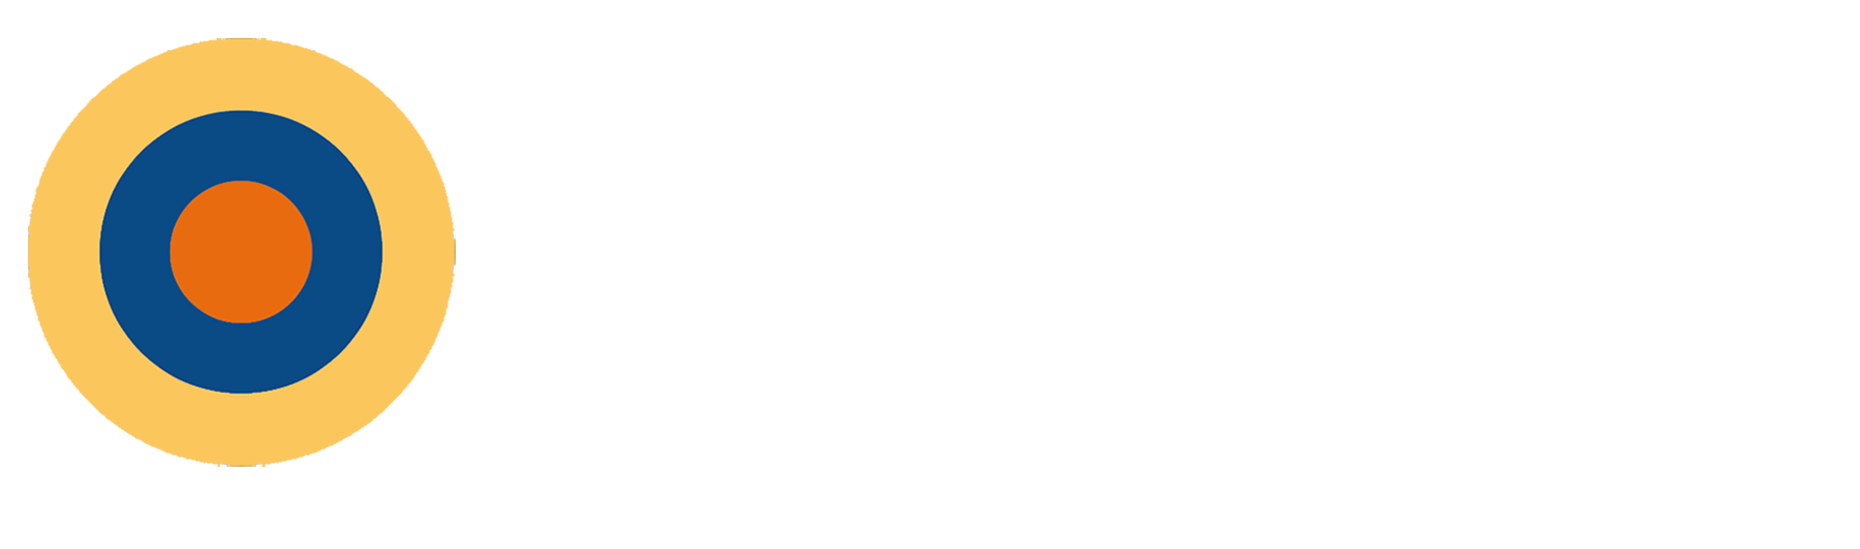 Marmalade Sky TV